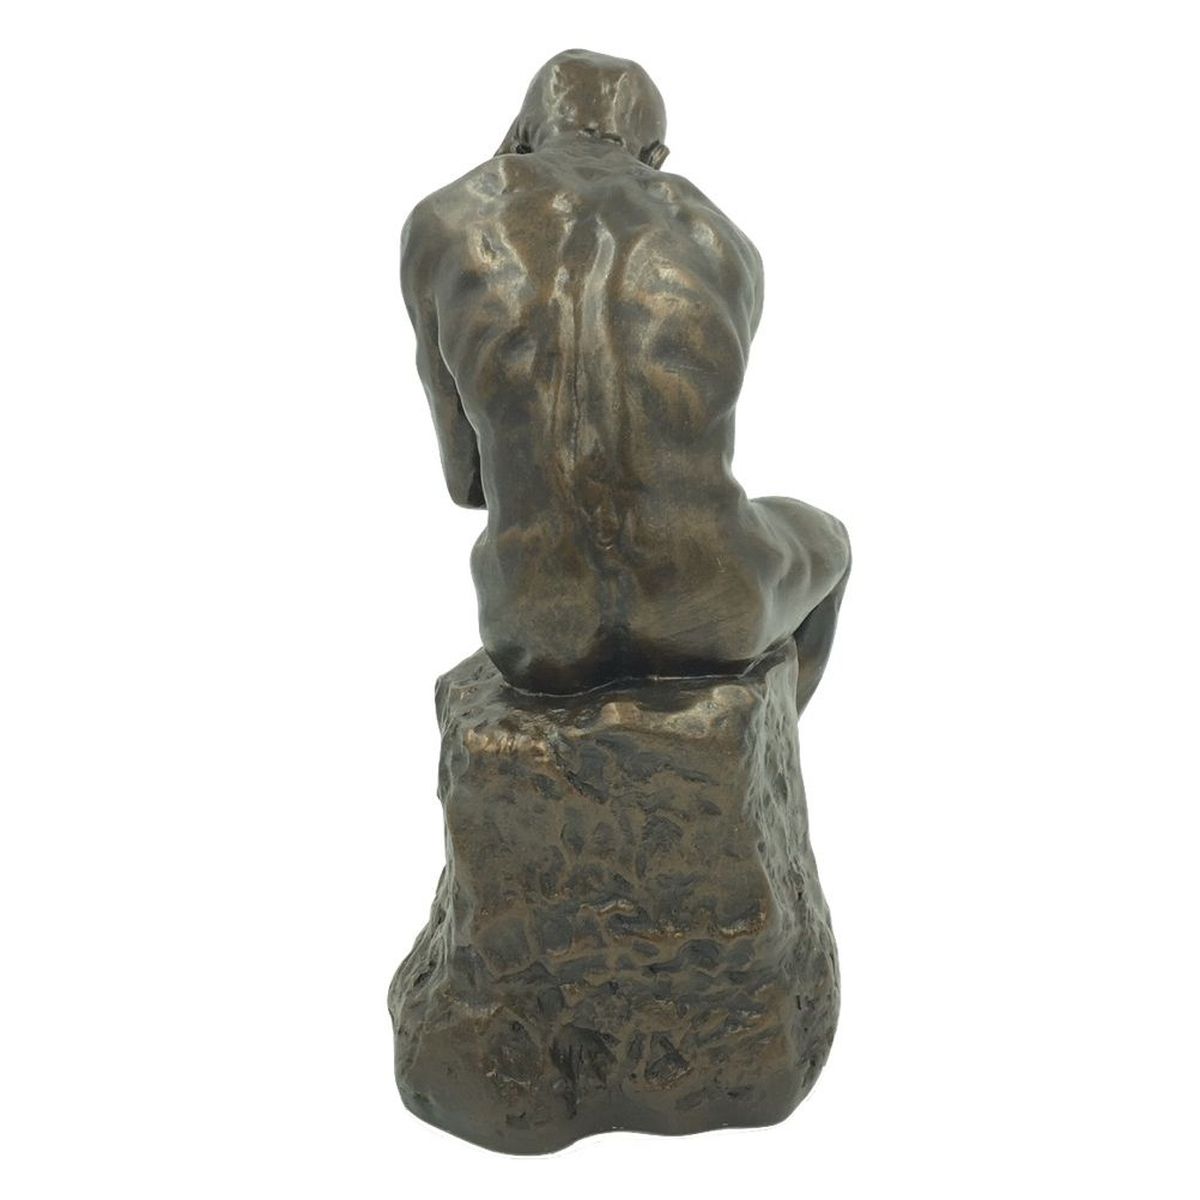 Reproduction du Penseur de Rodin - 25 cm